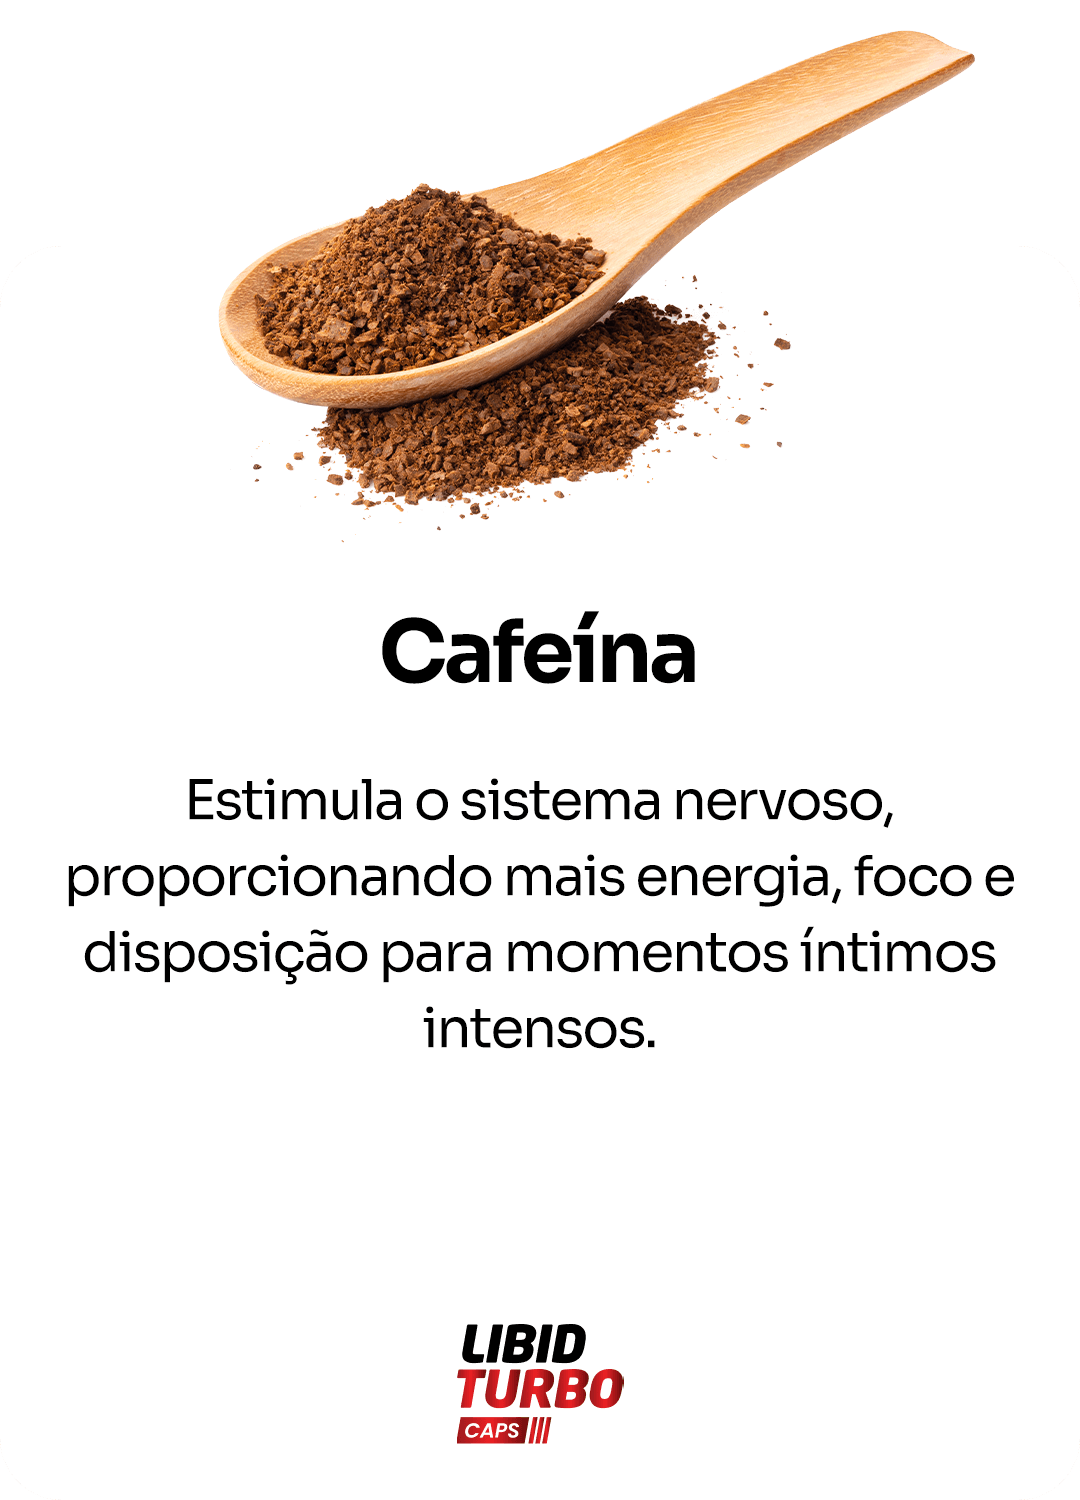 Cafeina.png